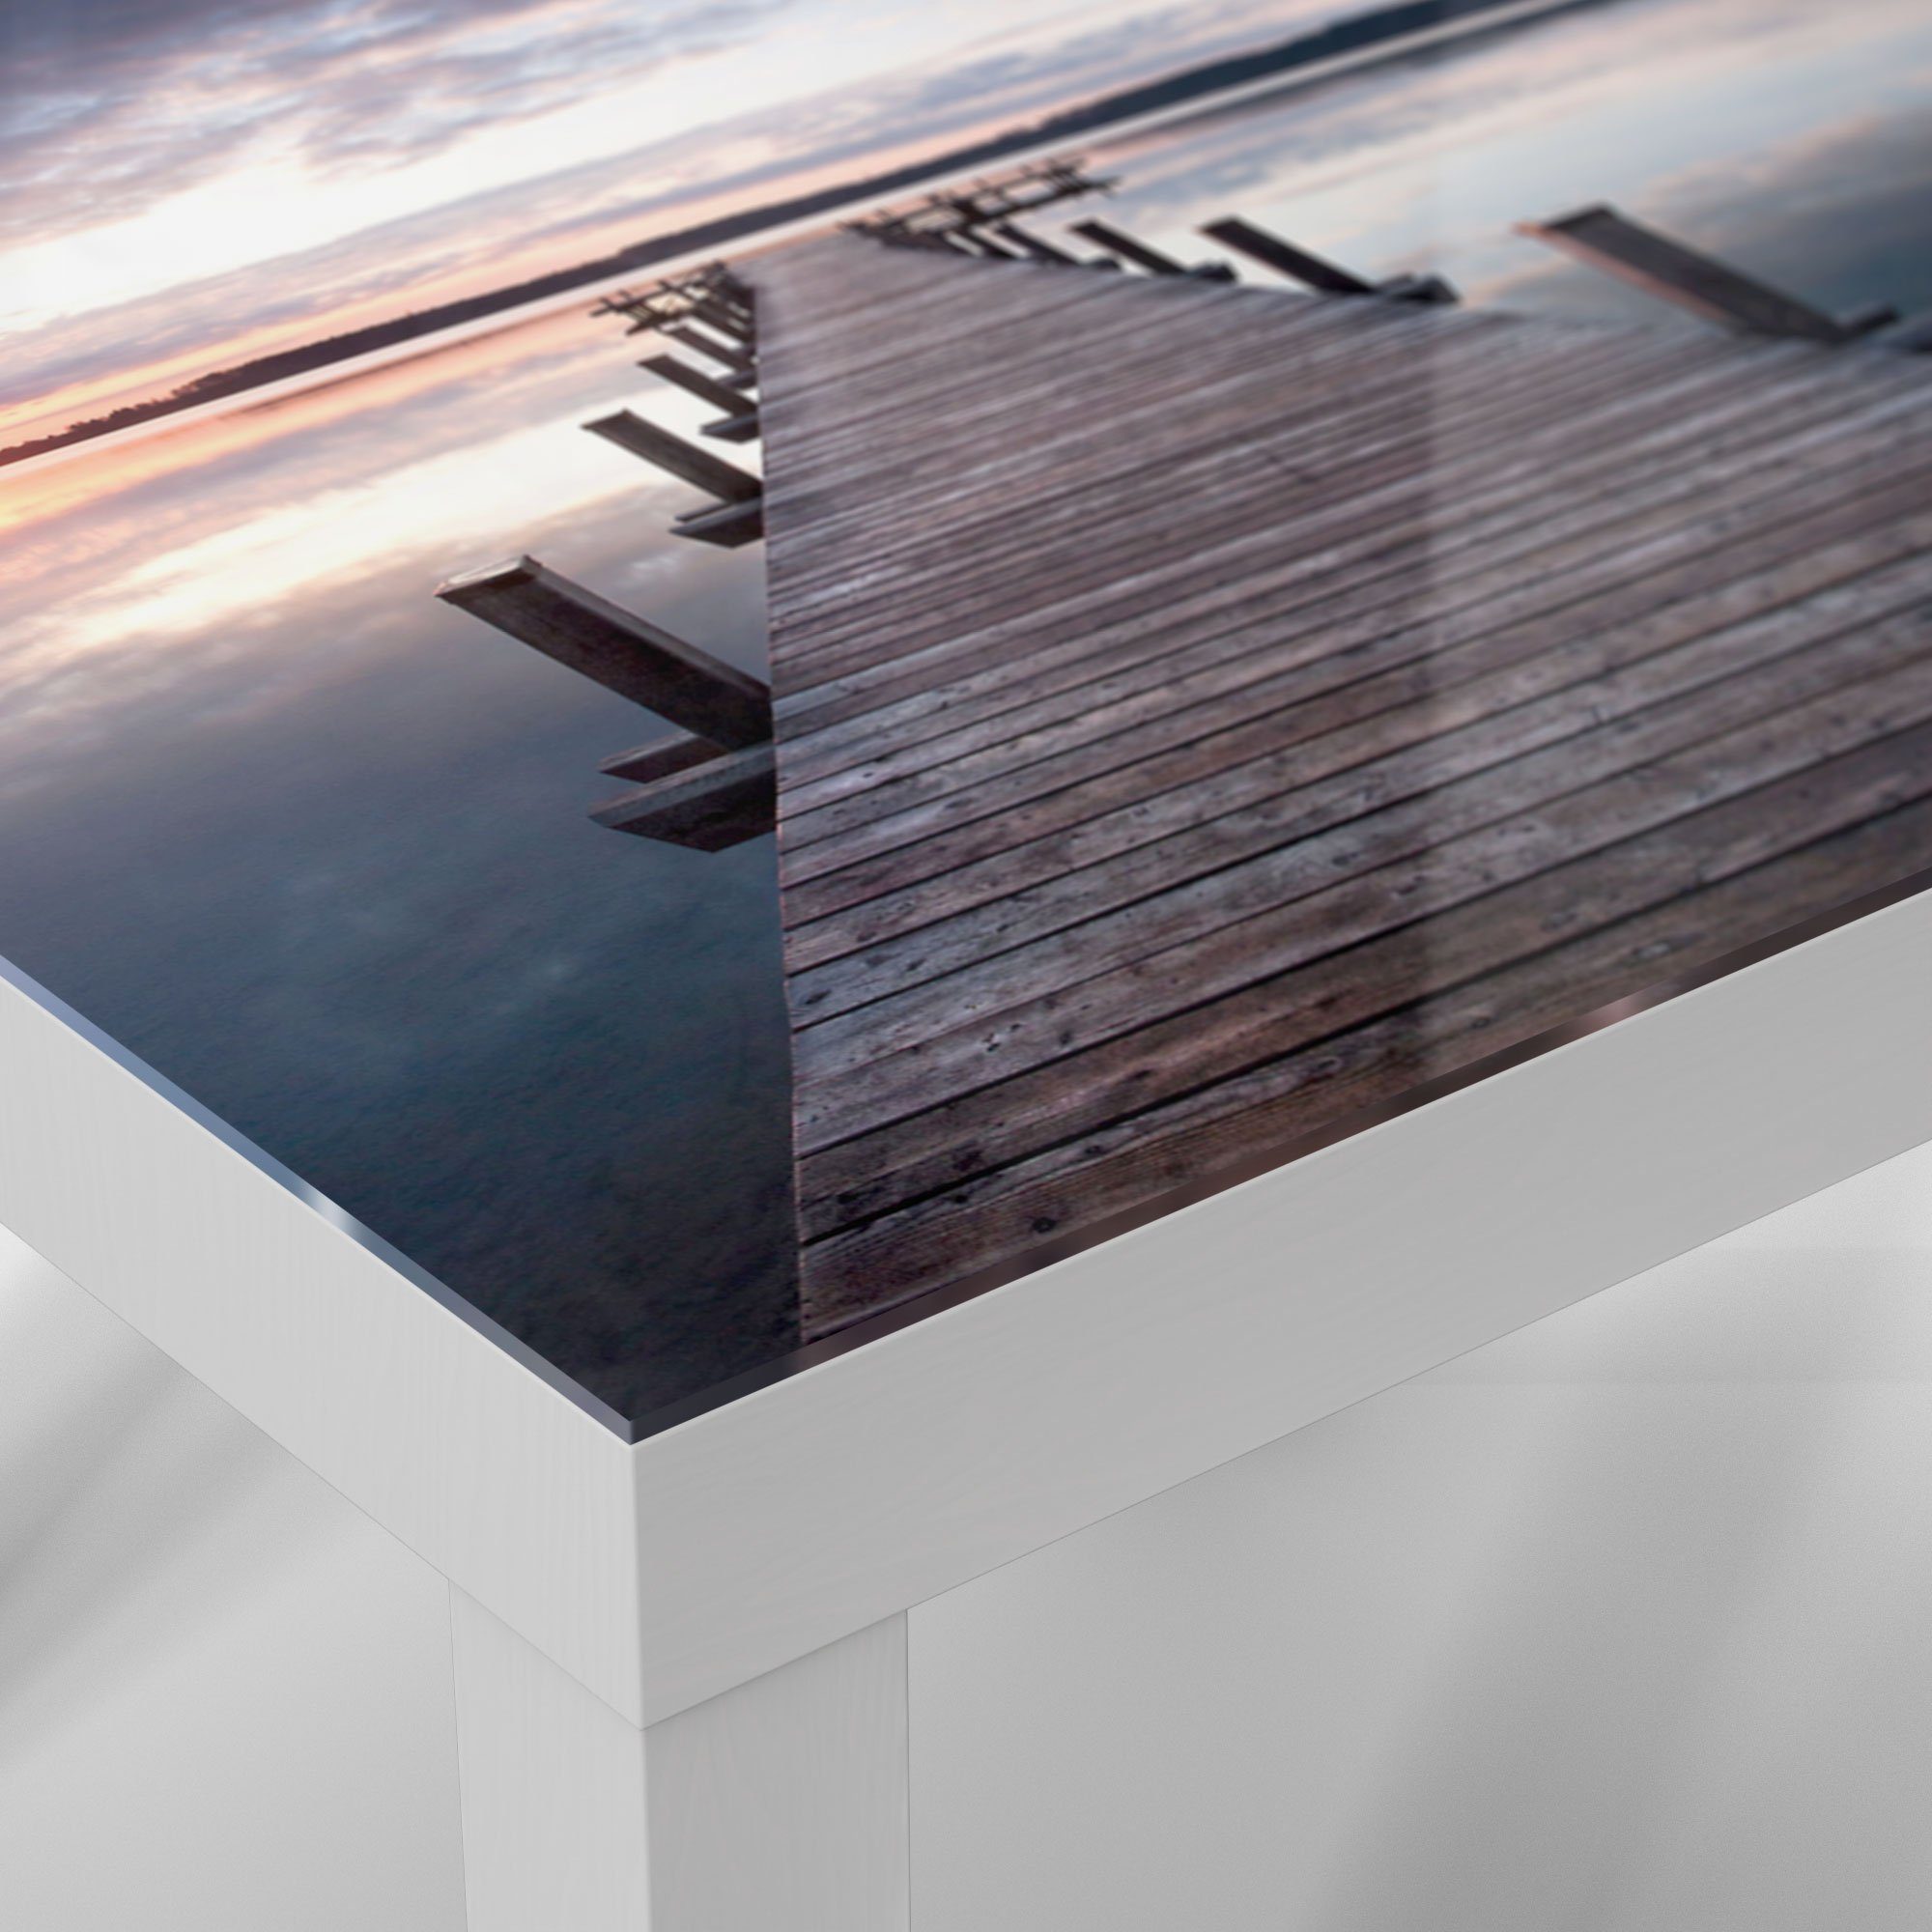 Sonnenuntergang', DEQORI Beistelltisch Glastisch bei Couchtisch 'Steg modern Glas Weiß